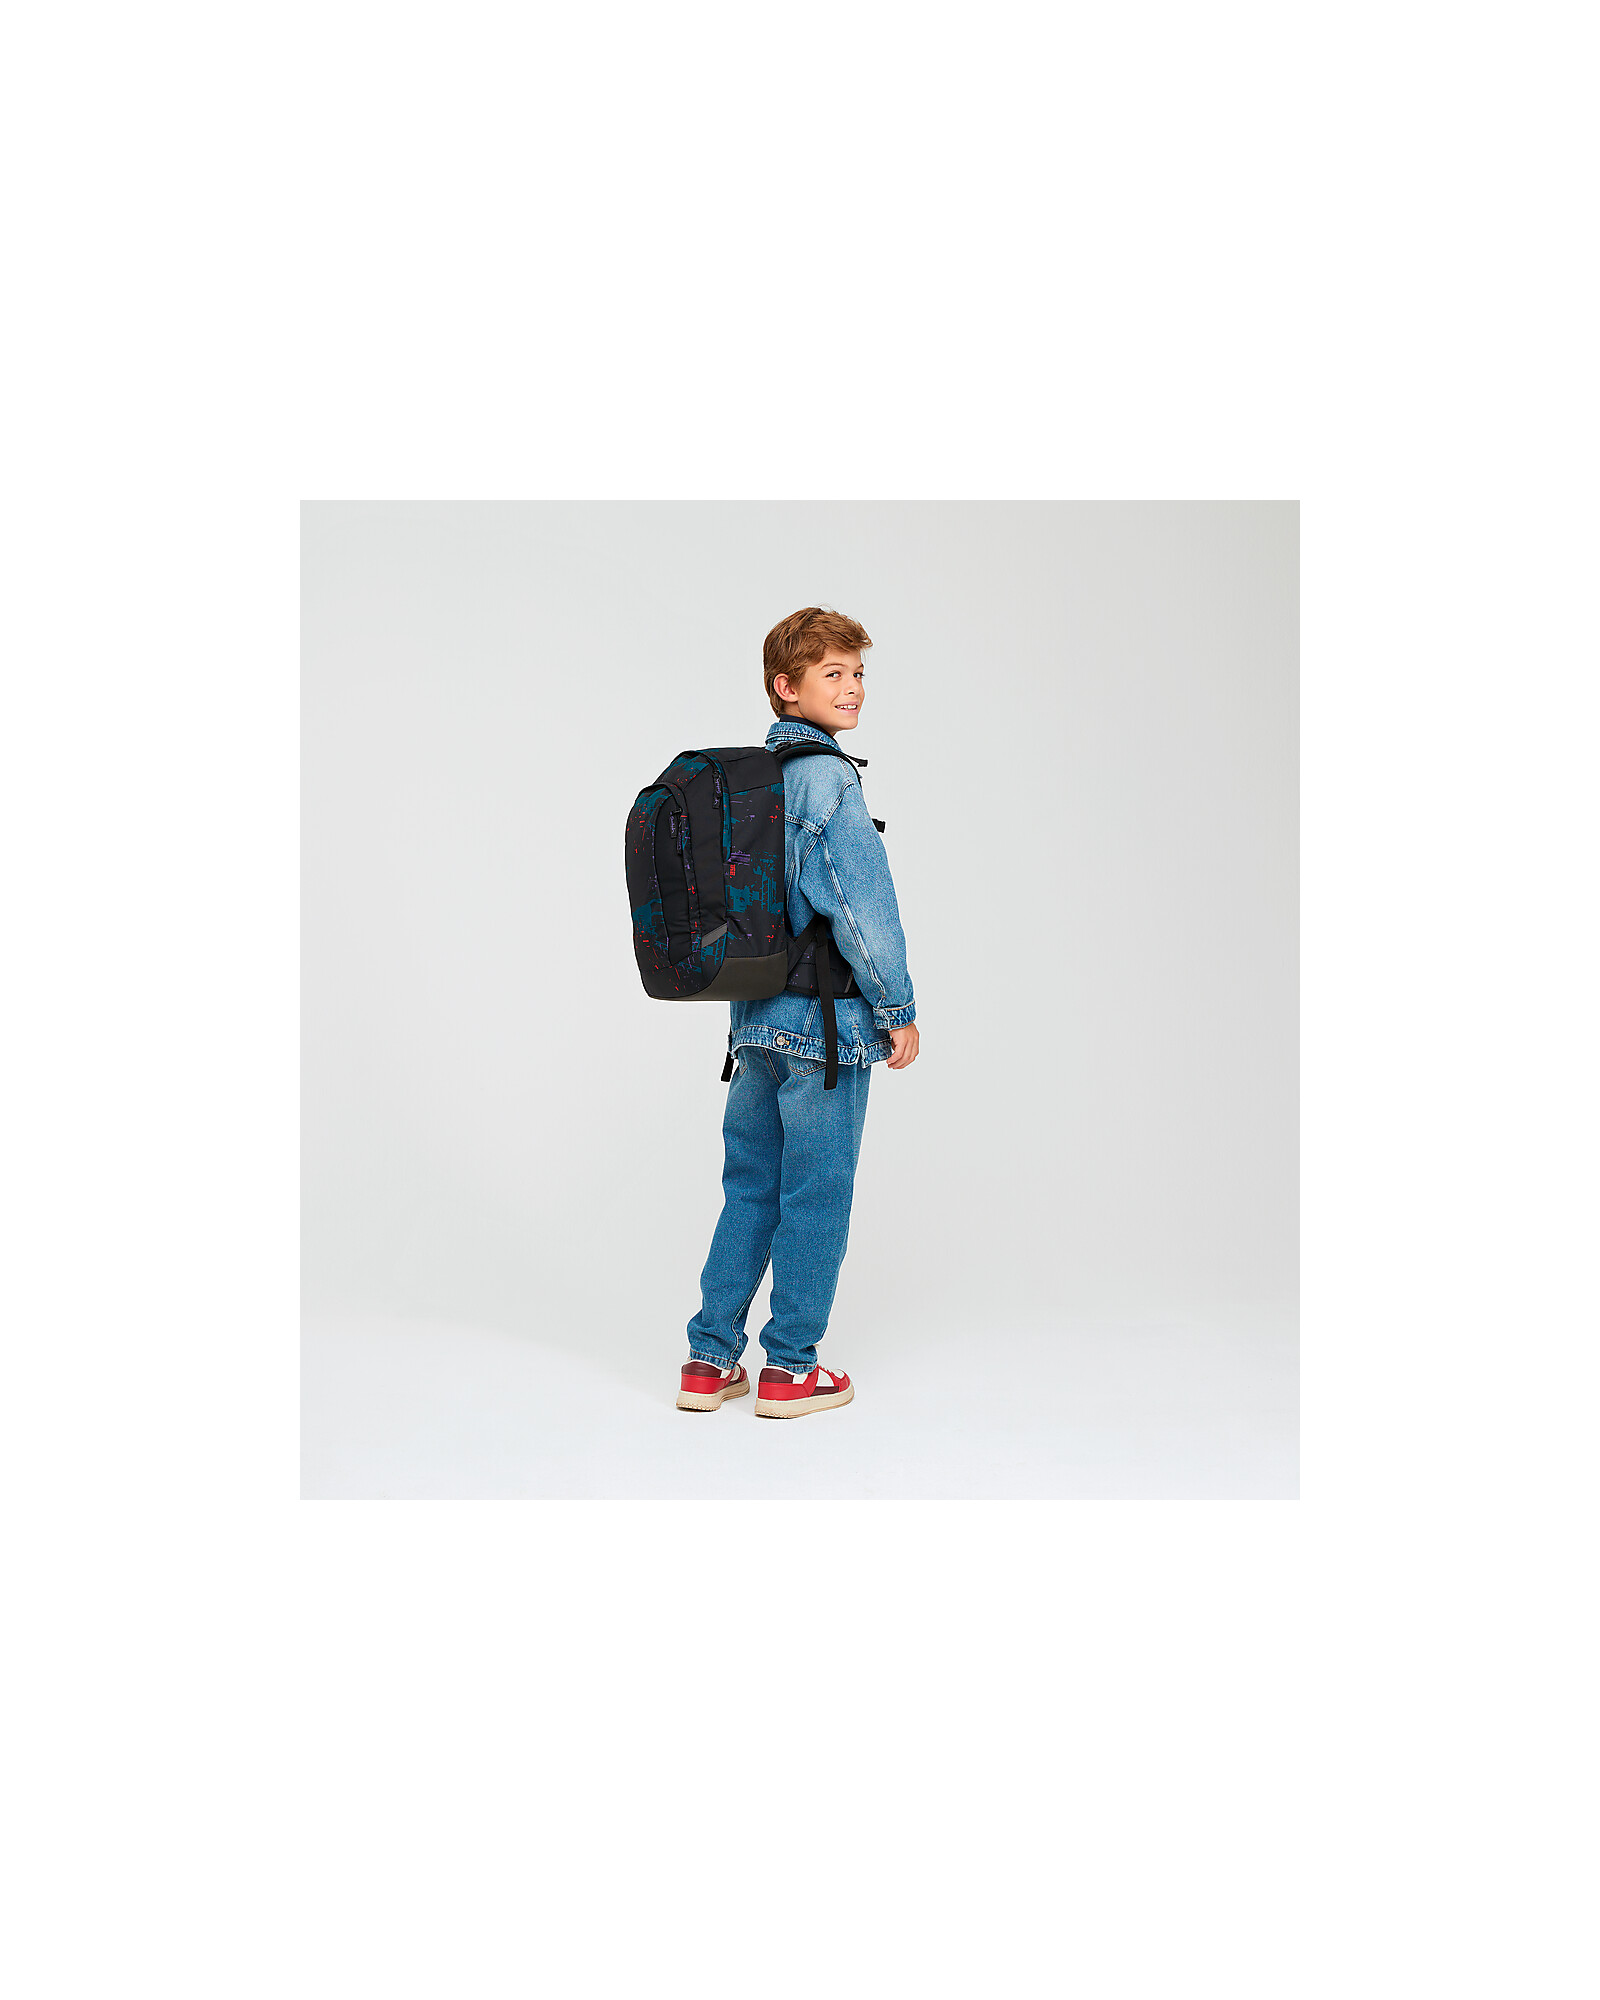 Ergon BC2 Ergonomic Backpack, Blue | Bikeinn